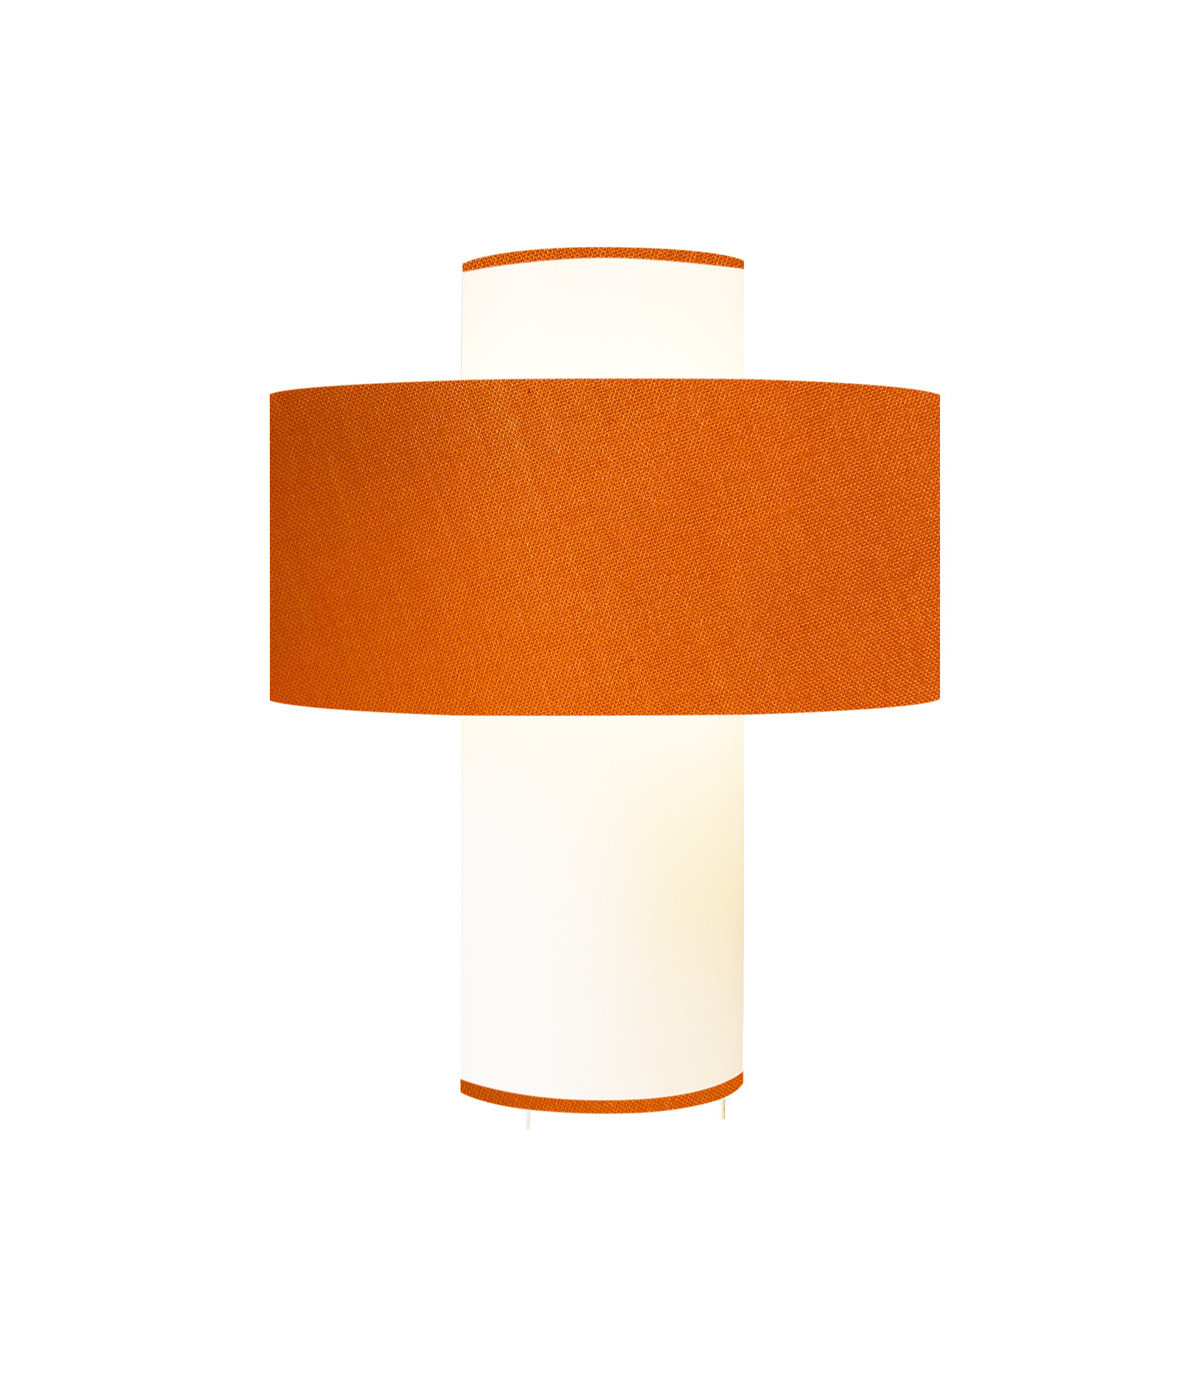 Lampe orange D 35 cm